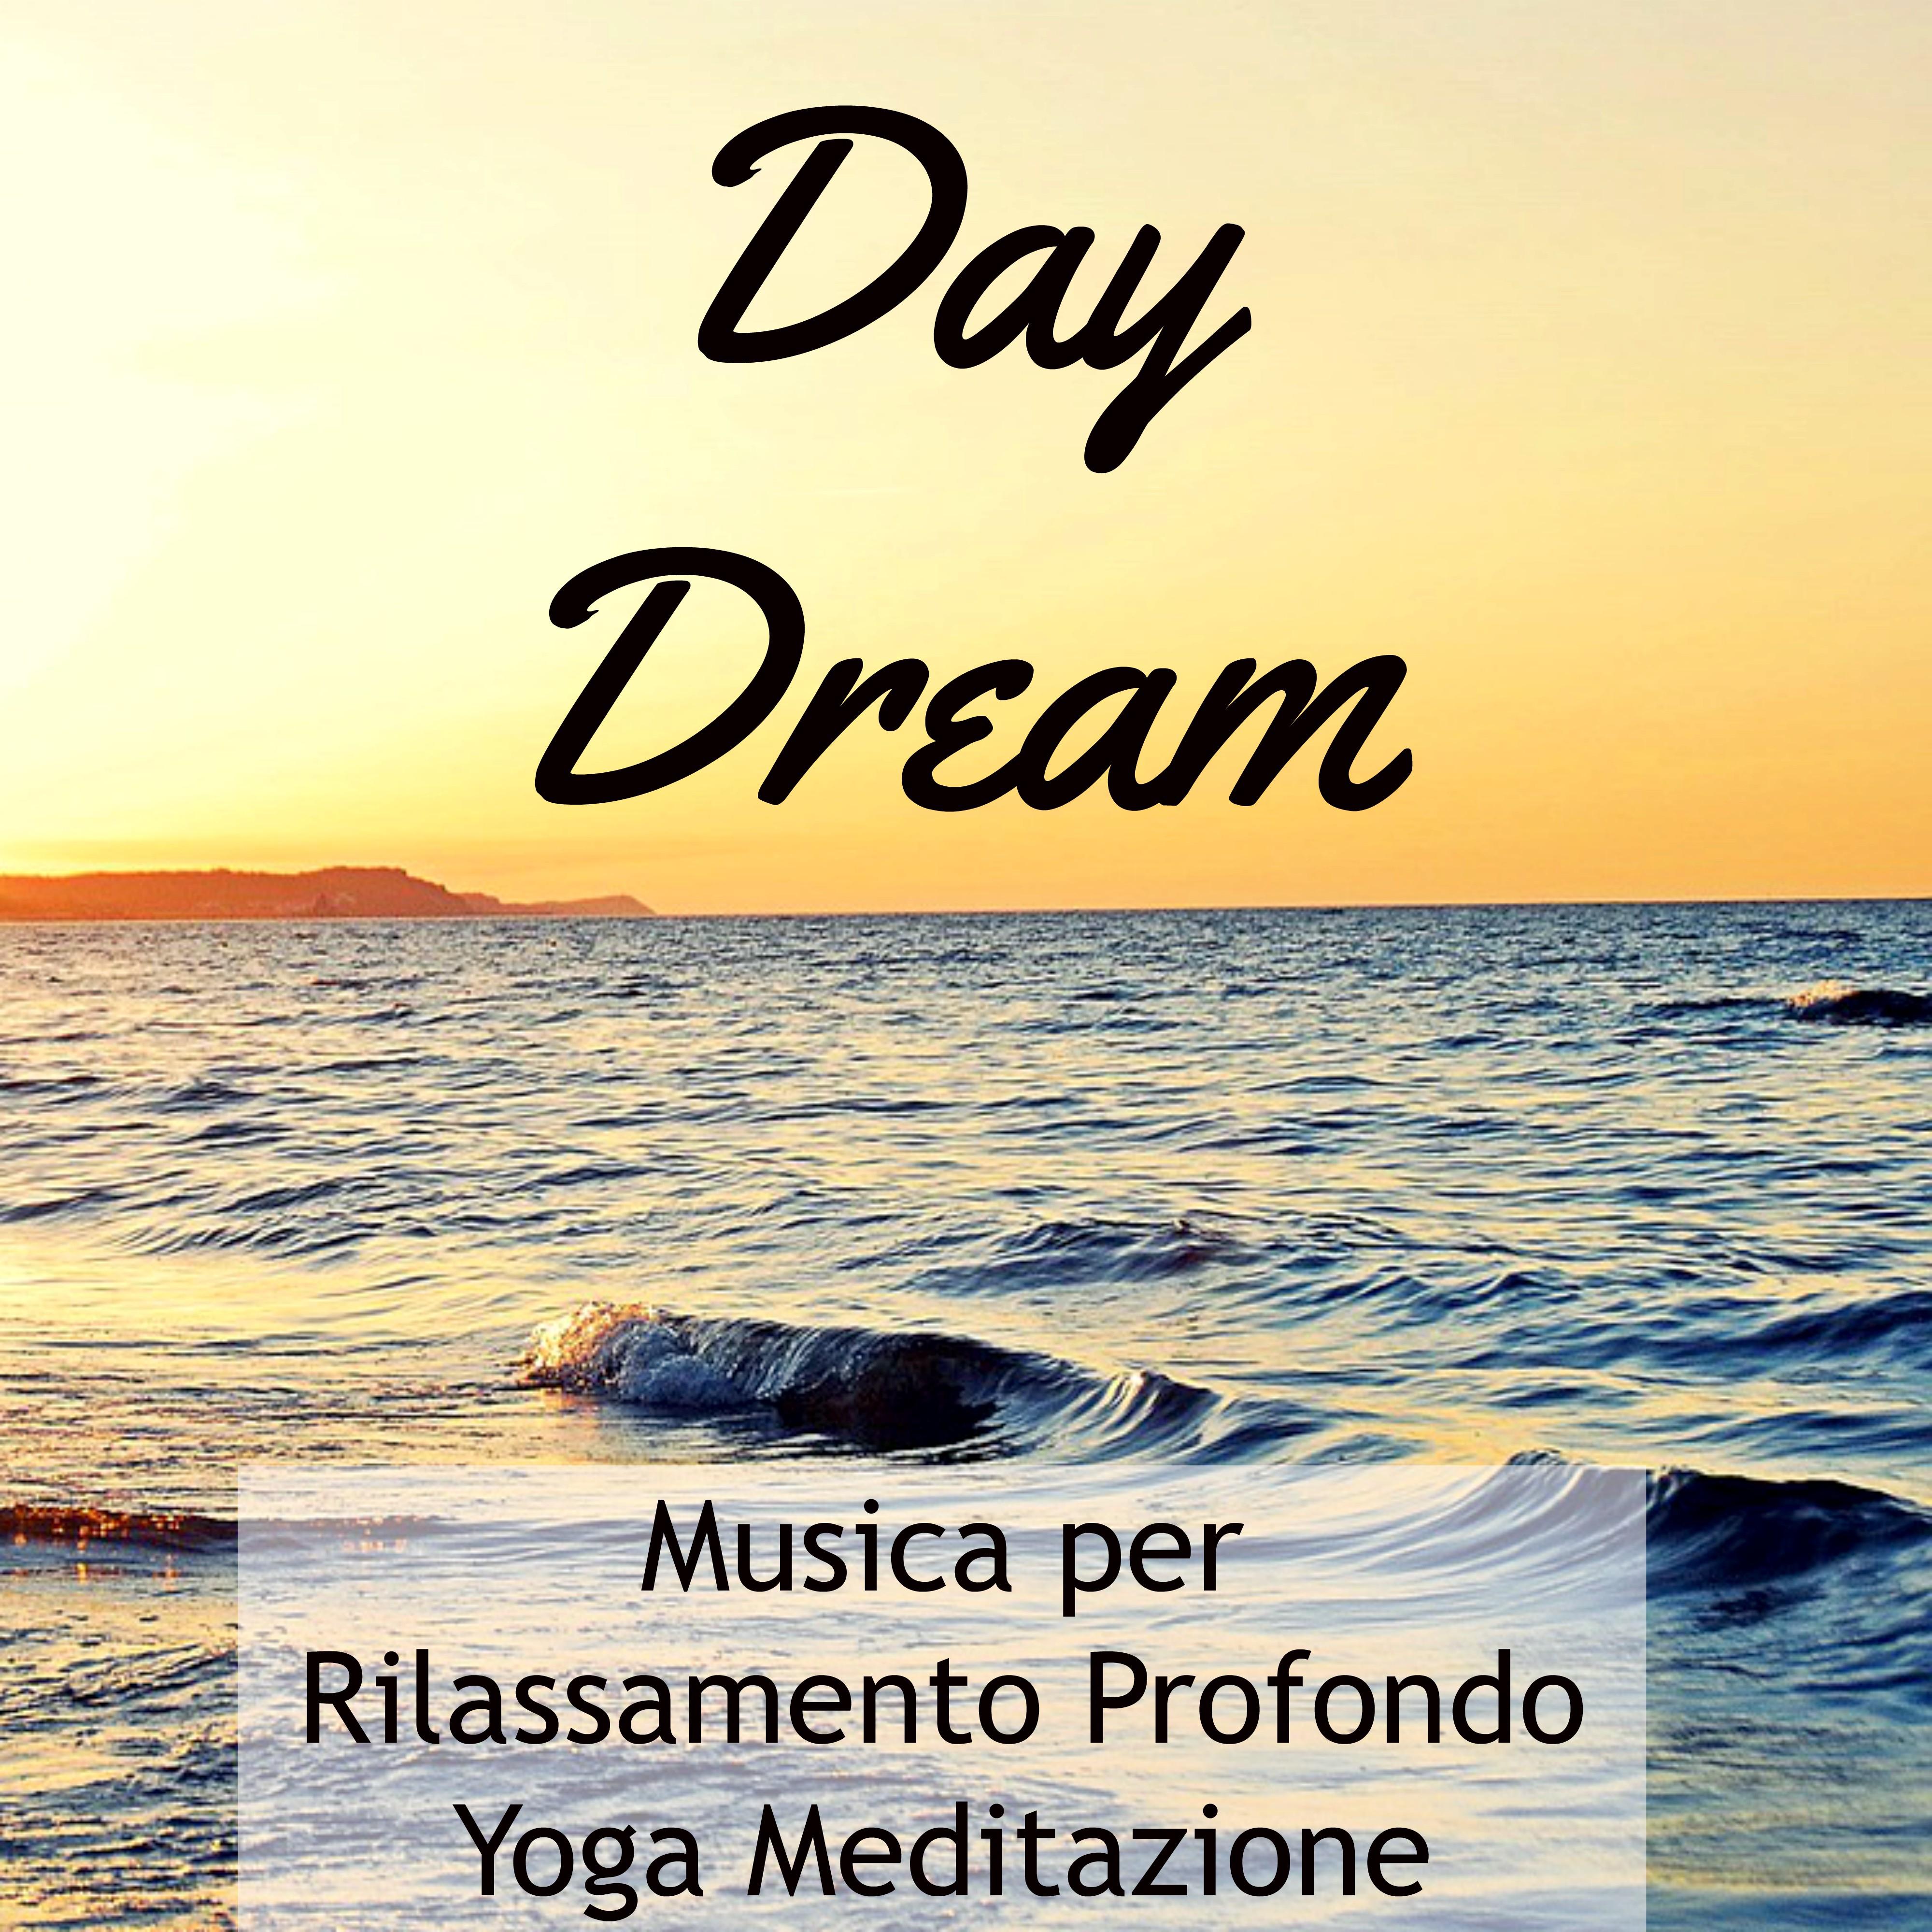 Day Dream - Musica per Rilassamento Profondo Yoga Meditazione con Suoni Meditativi New Age Strumentali